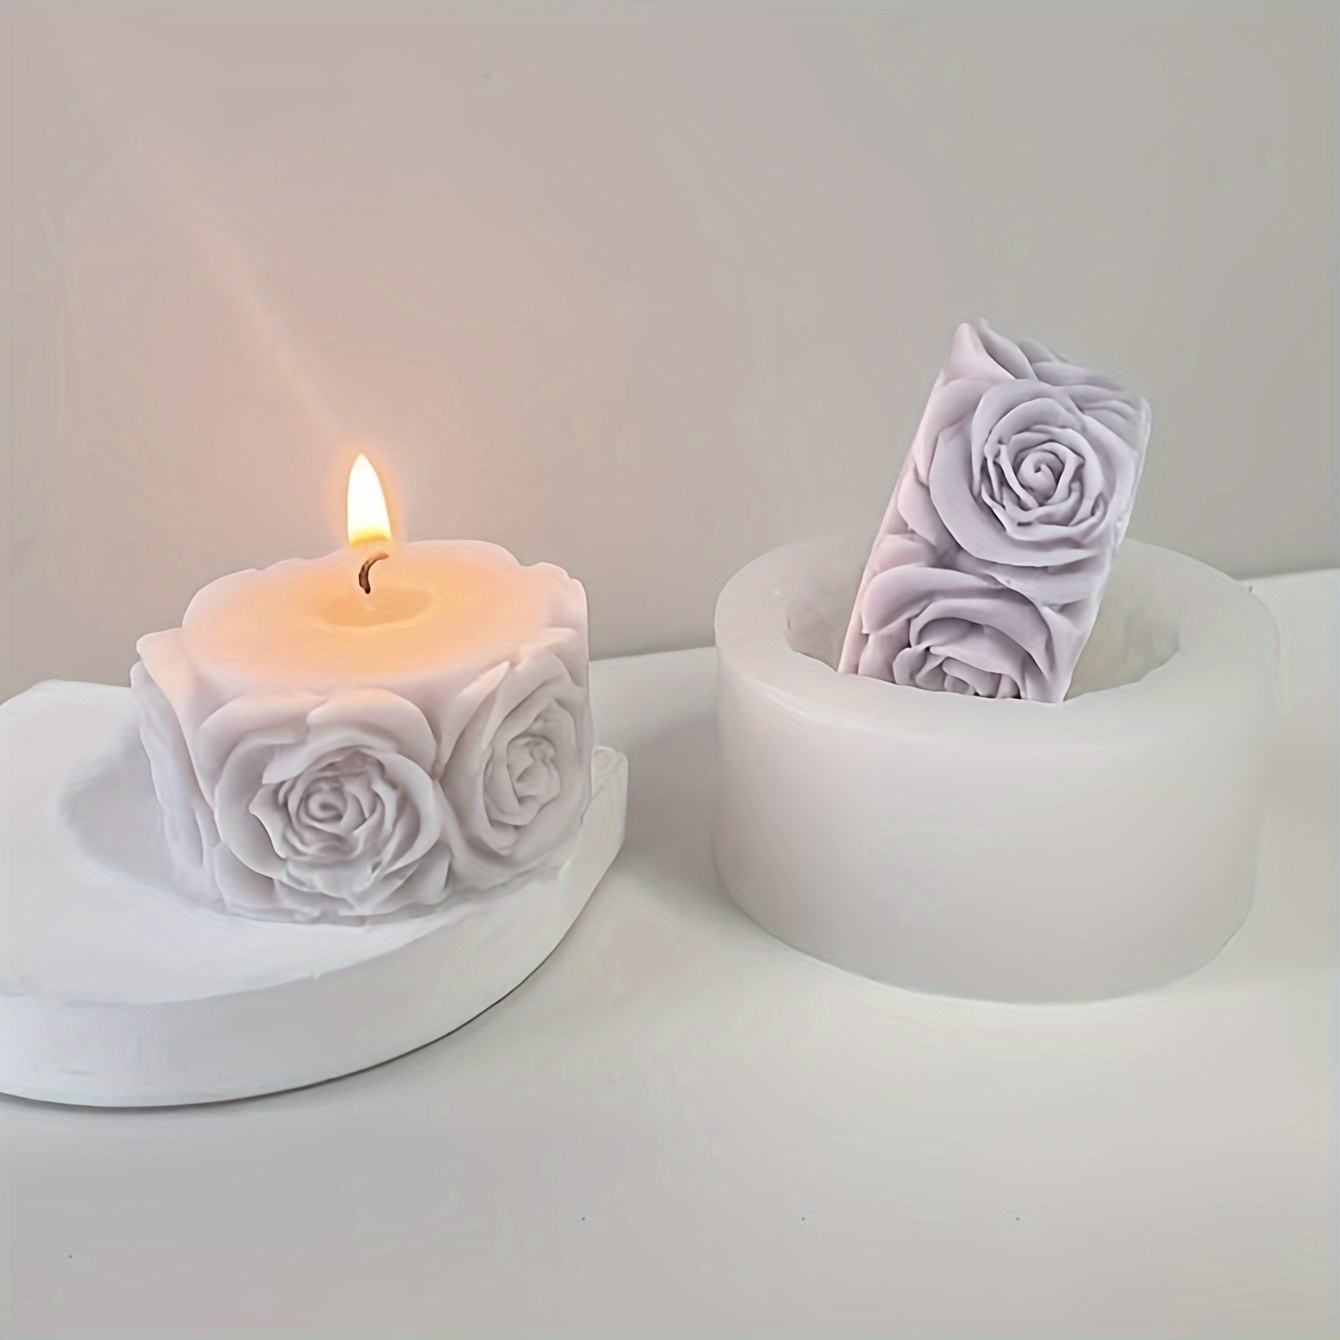  Heart Tree Design Handmade White Resin Soap Stamp